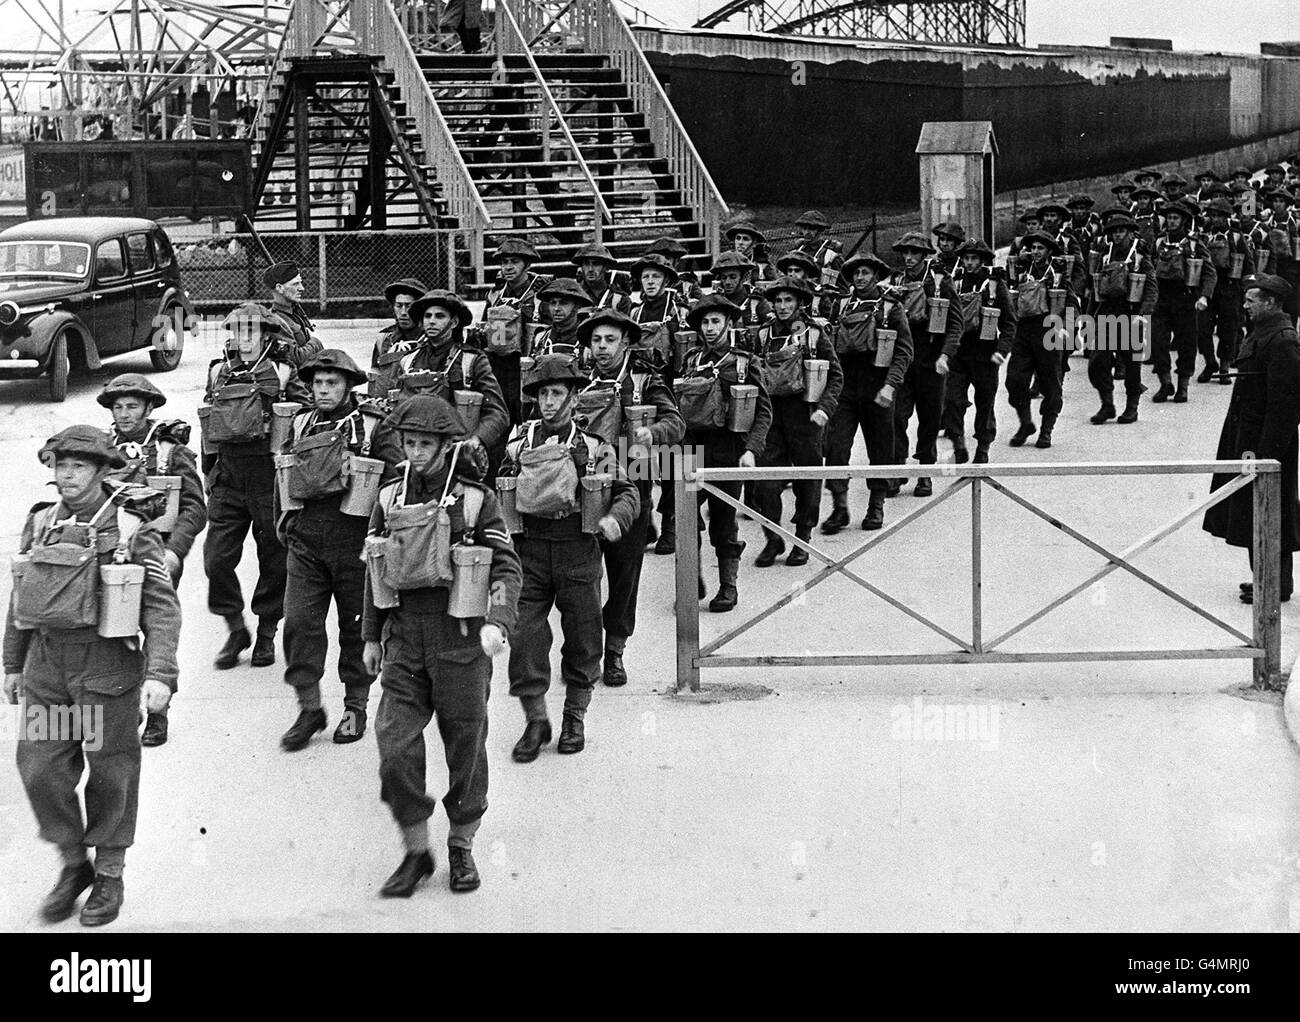 1940: Les pionniers de l'armée britannique quittent leur camp de la côte est en kit complet pour une marche de route pendant la Seconde Guerre mondiale. Photo de la collection PA de la Seconde Guerre mondiale. Banque D'Images